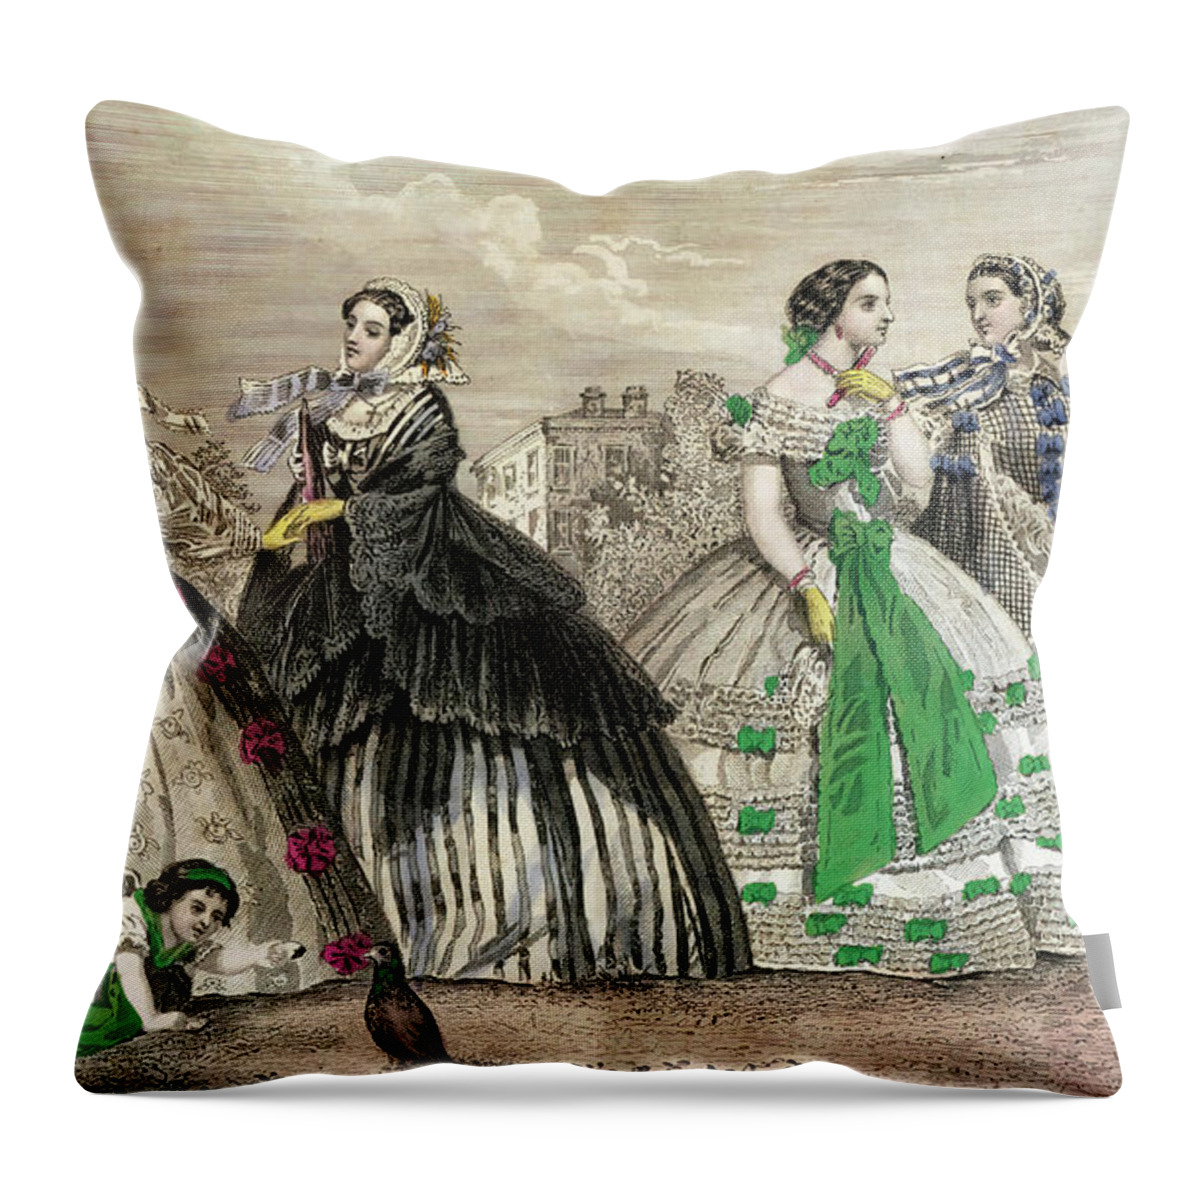 1861 Throw Pillow featuring the photograph Women at a ball wearing Victorian era dresses #aYearForArt by Steve Estvanik